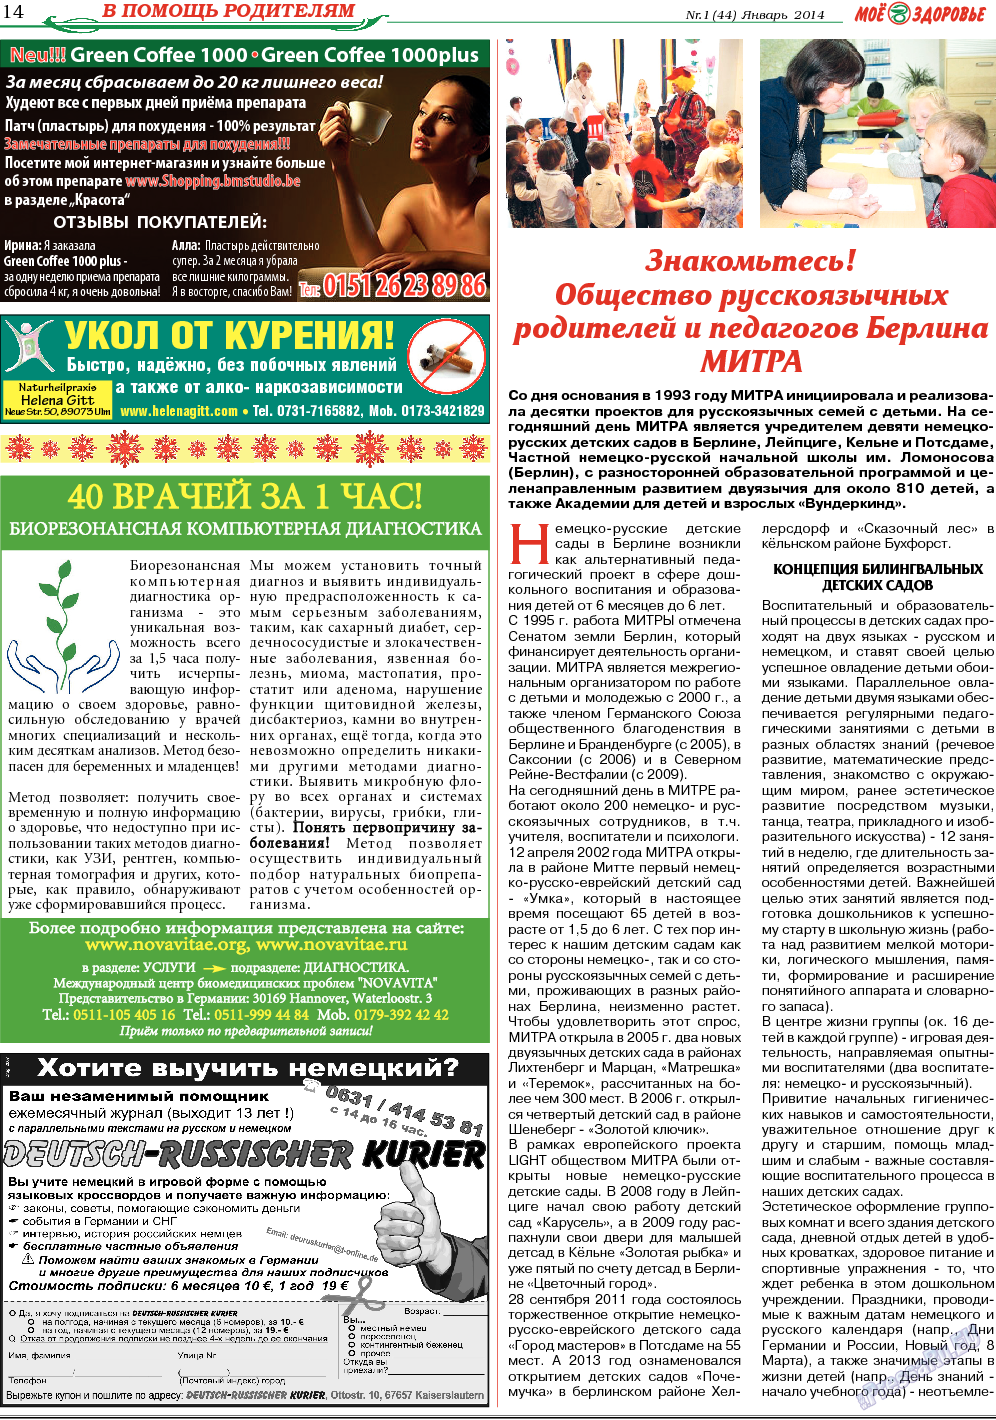 Кругозор (газета). 2014 год, номер 1, стр. 14